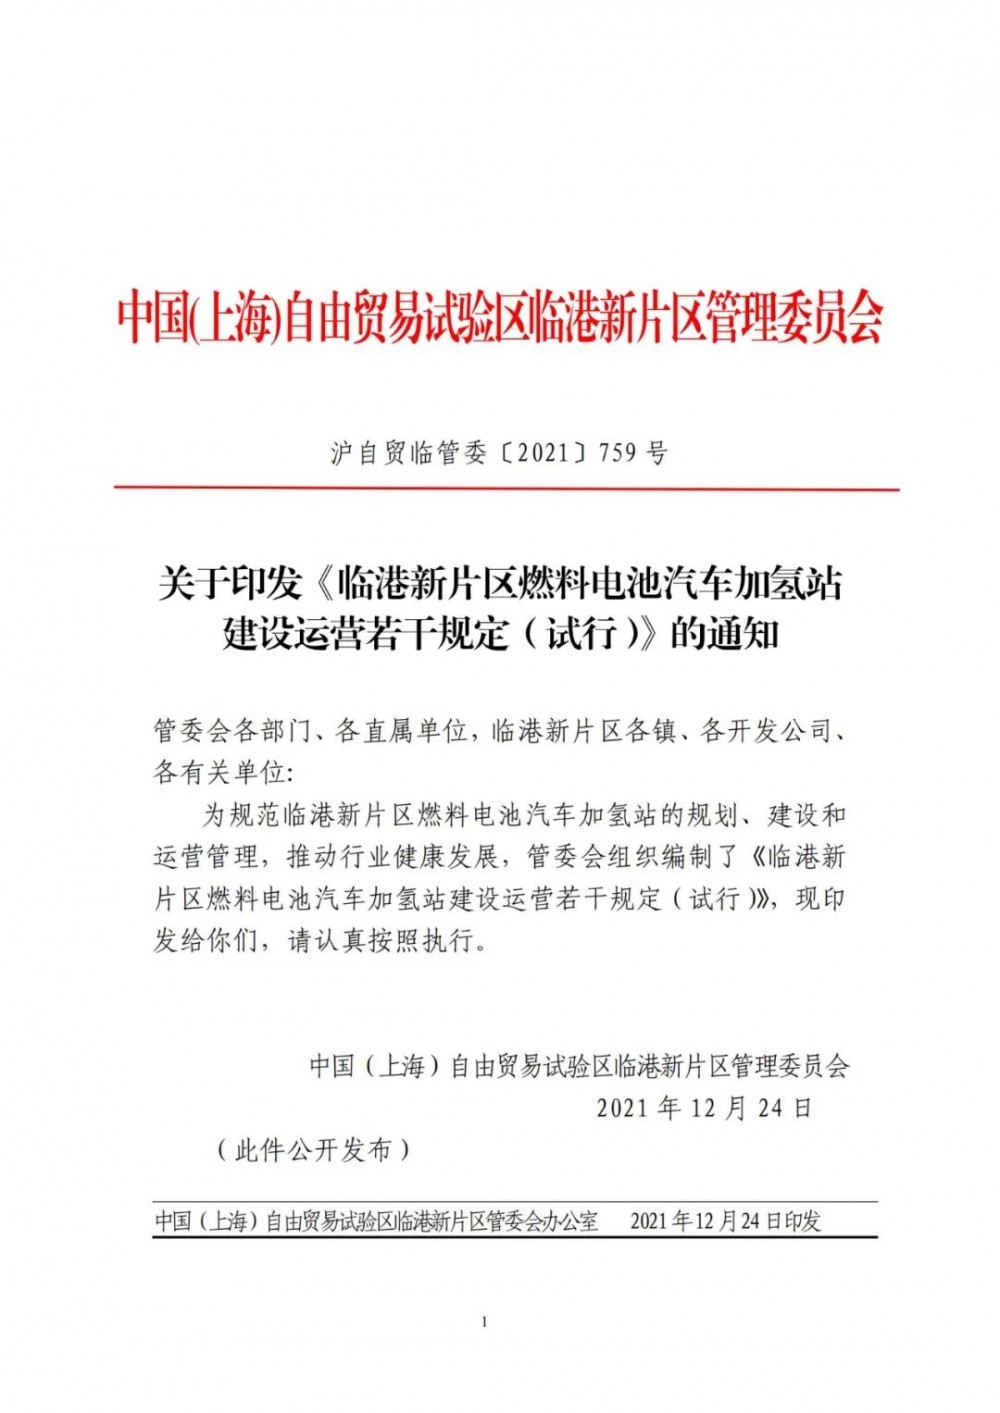 氢气瓶充装许可有效期4年！上海临港新片区燃料电池汽车加氢站建设运营规则确定！